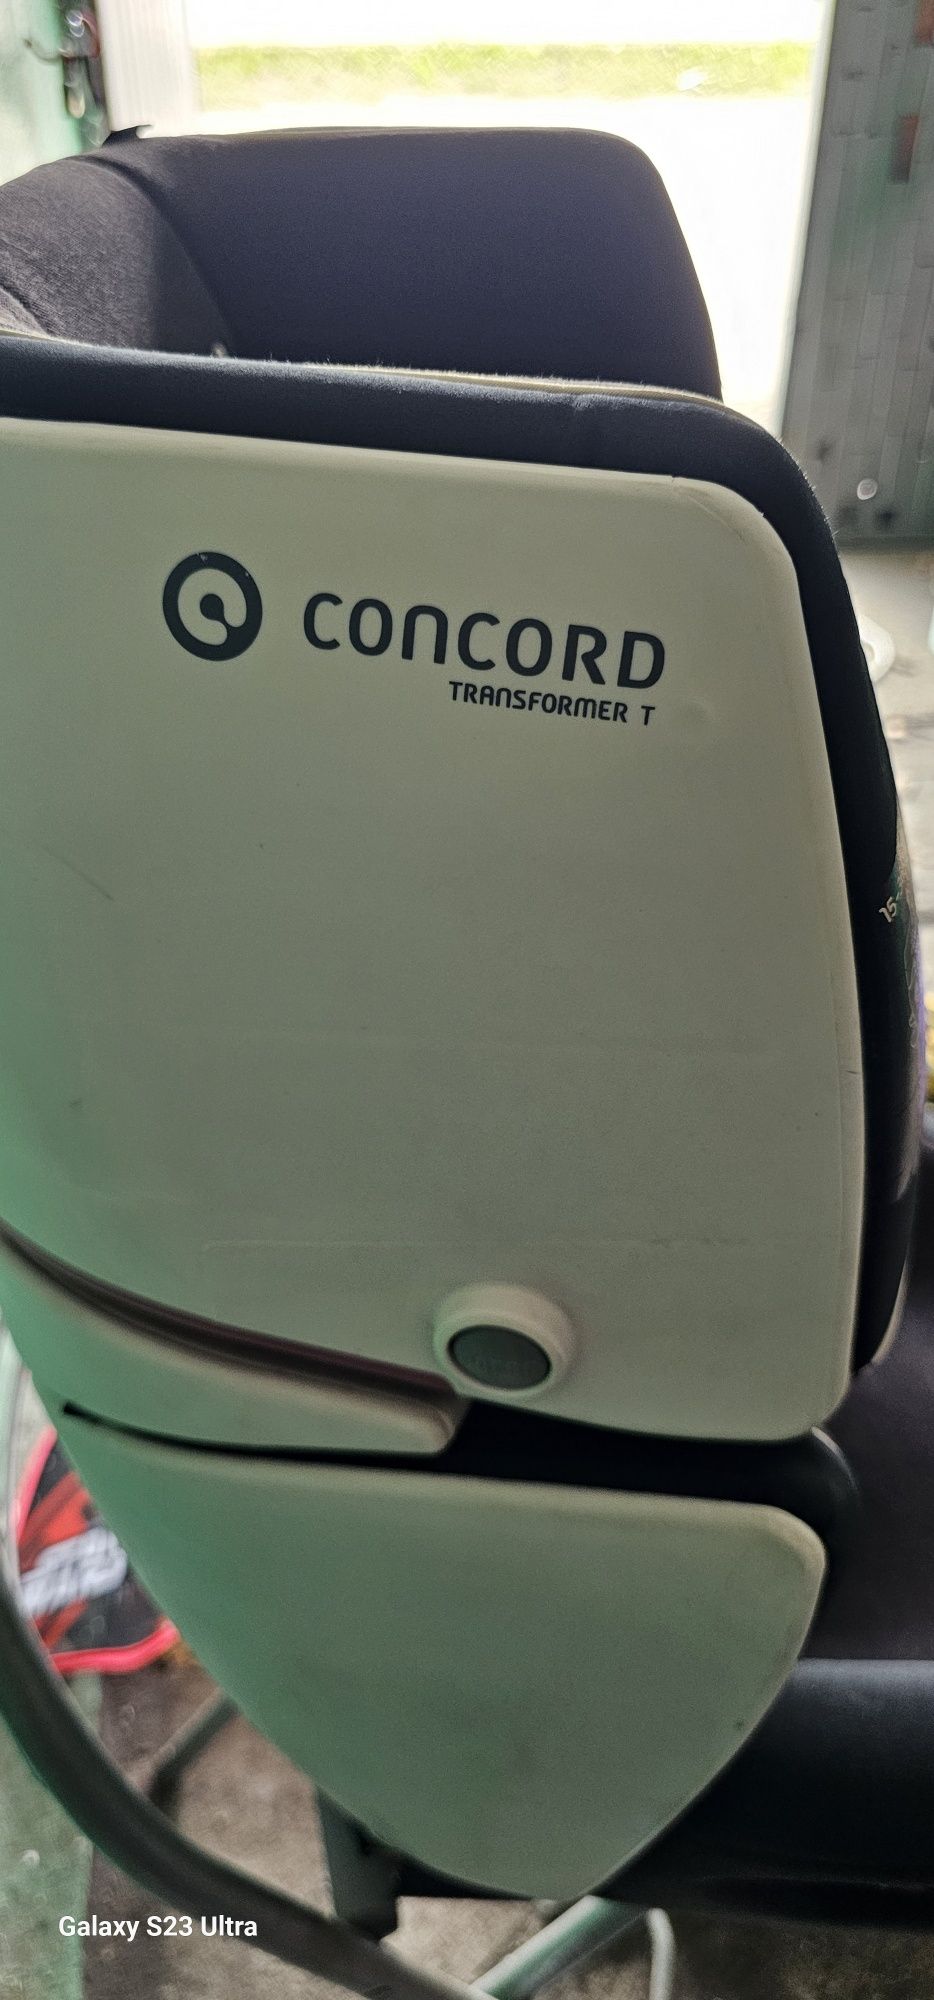 Concord transformer t